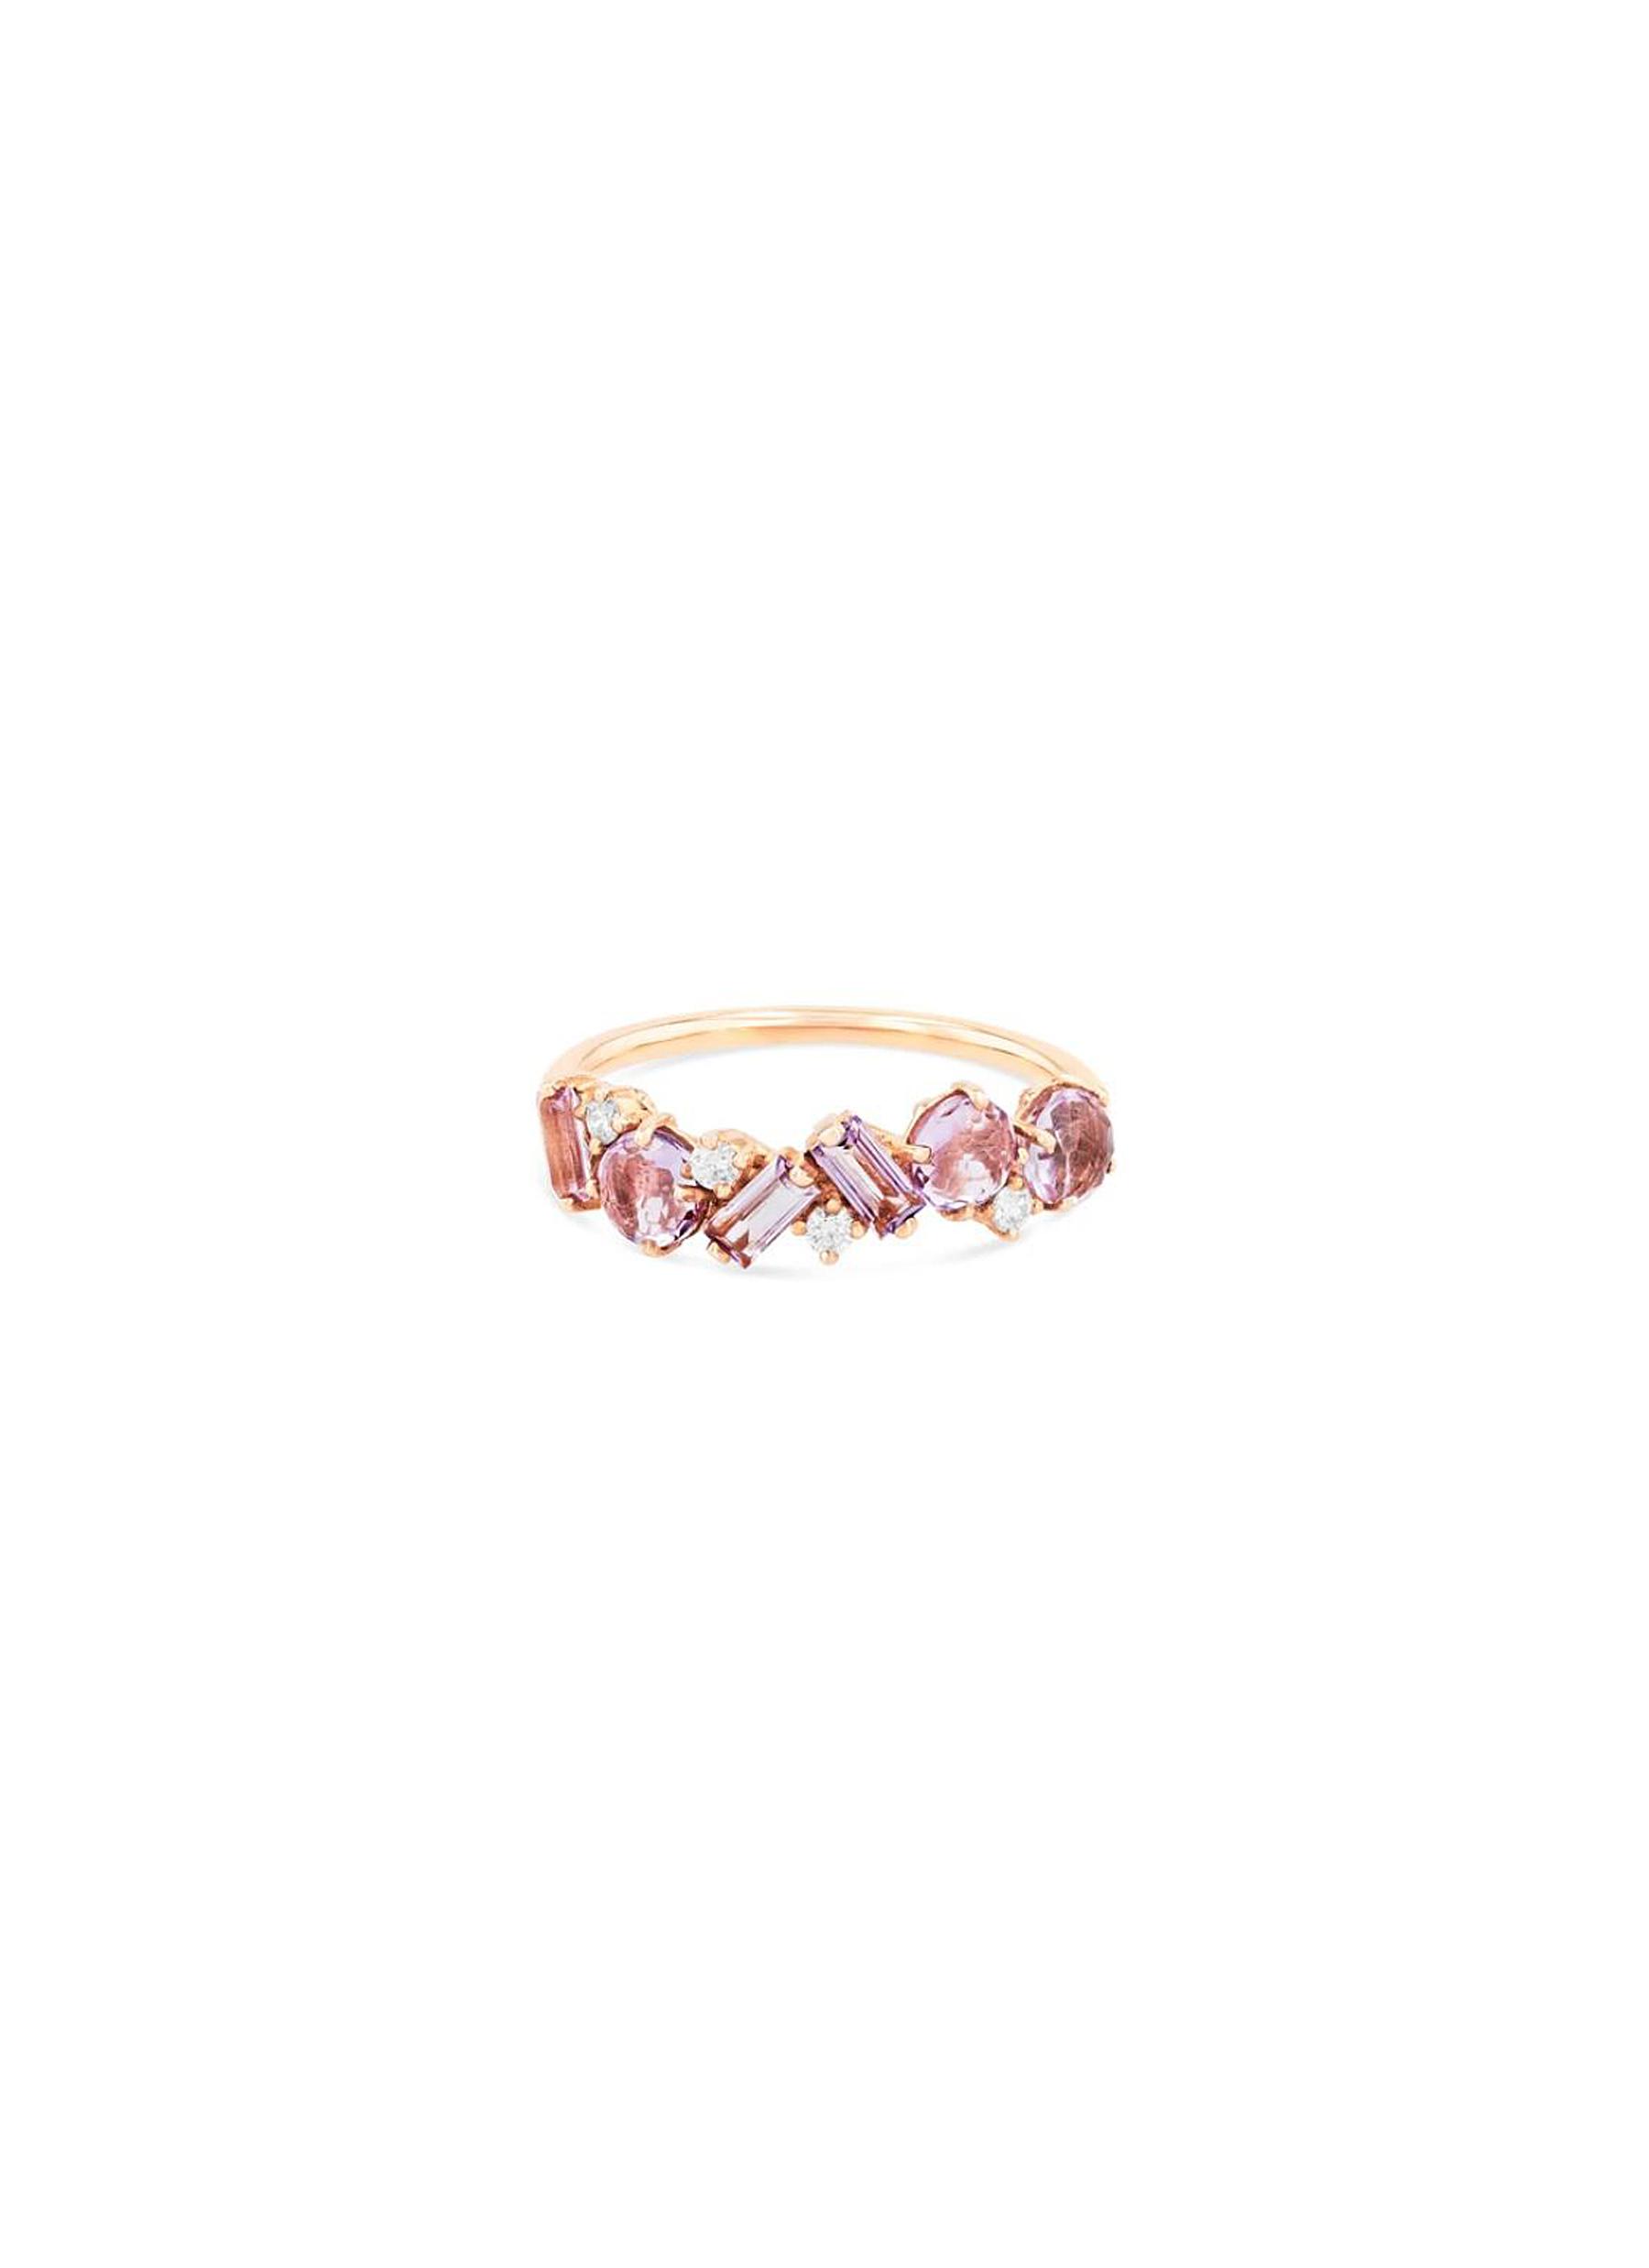 Suzanne Kalan Amalfi' Diamond Rhodolite 14k Rose Gold Ring